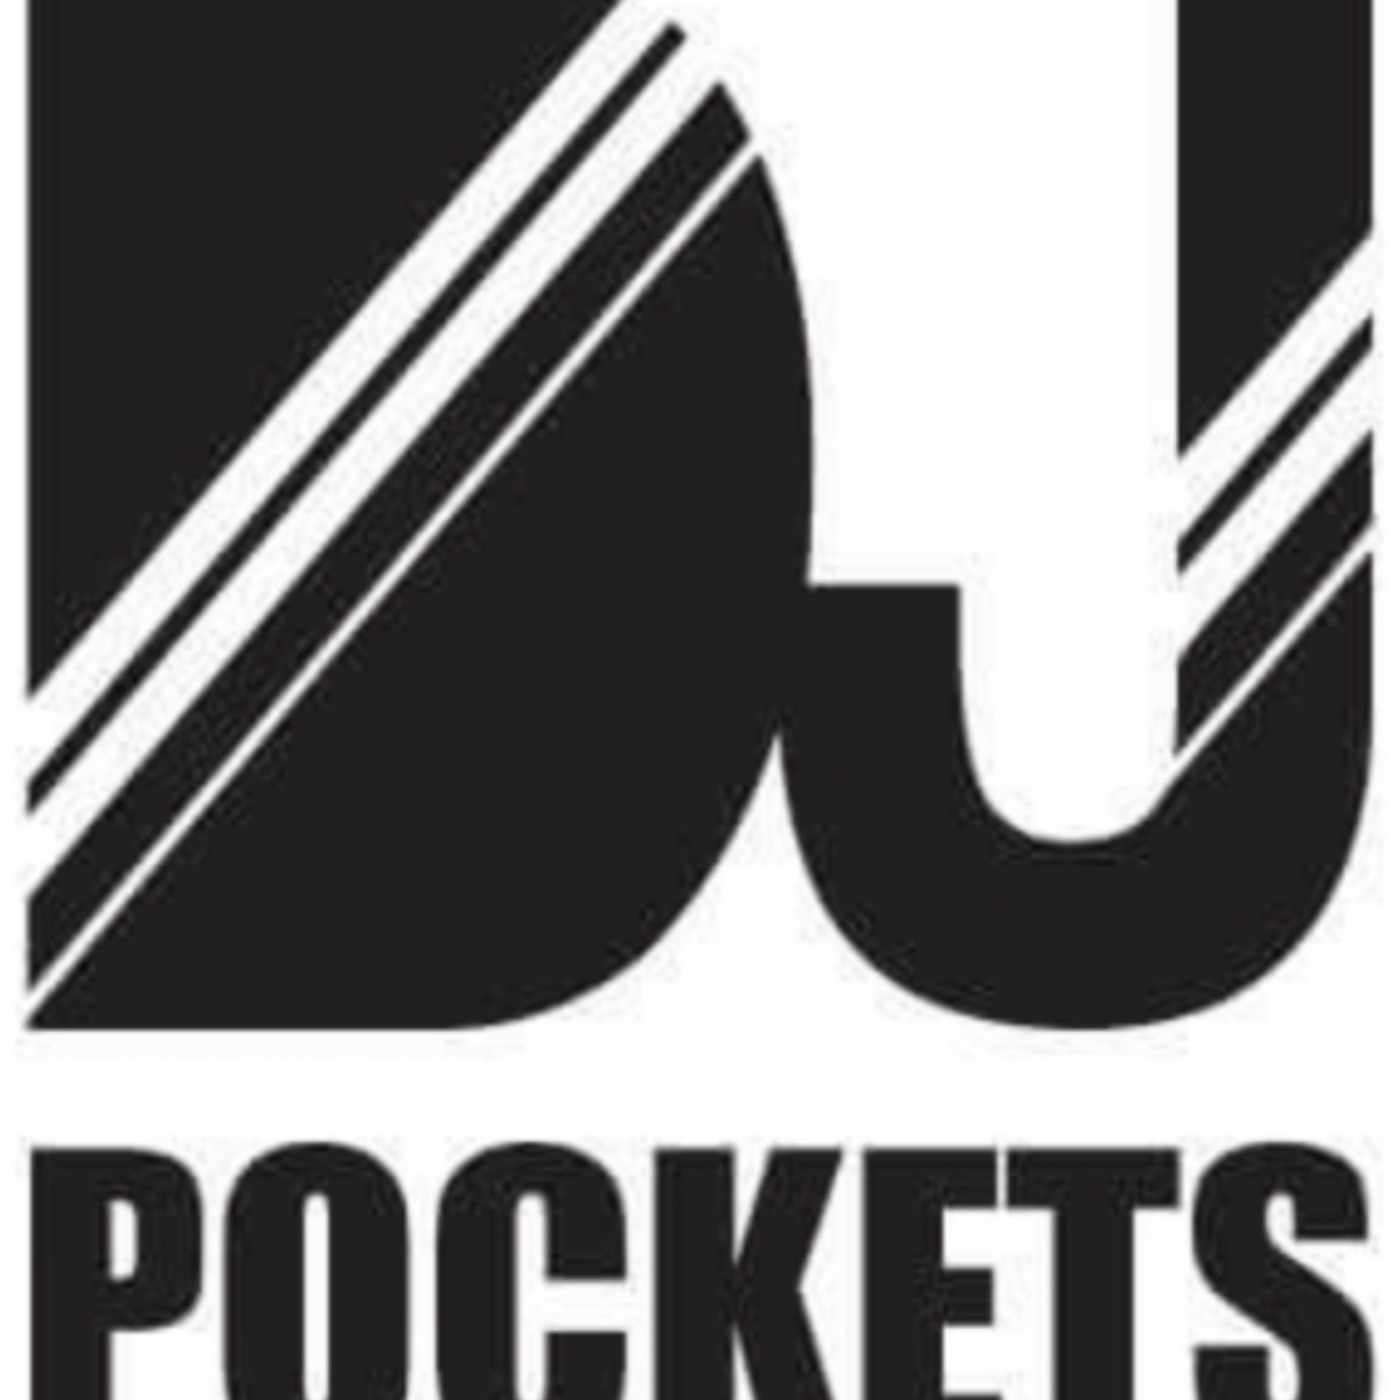 DJ Pockets